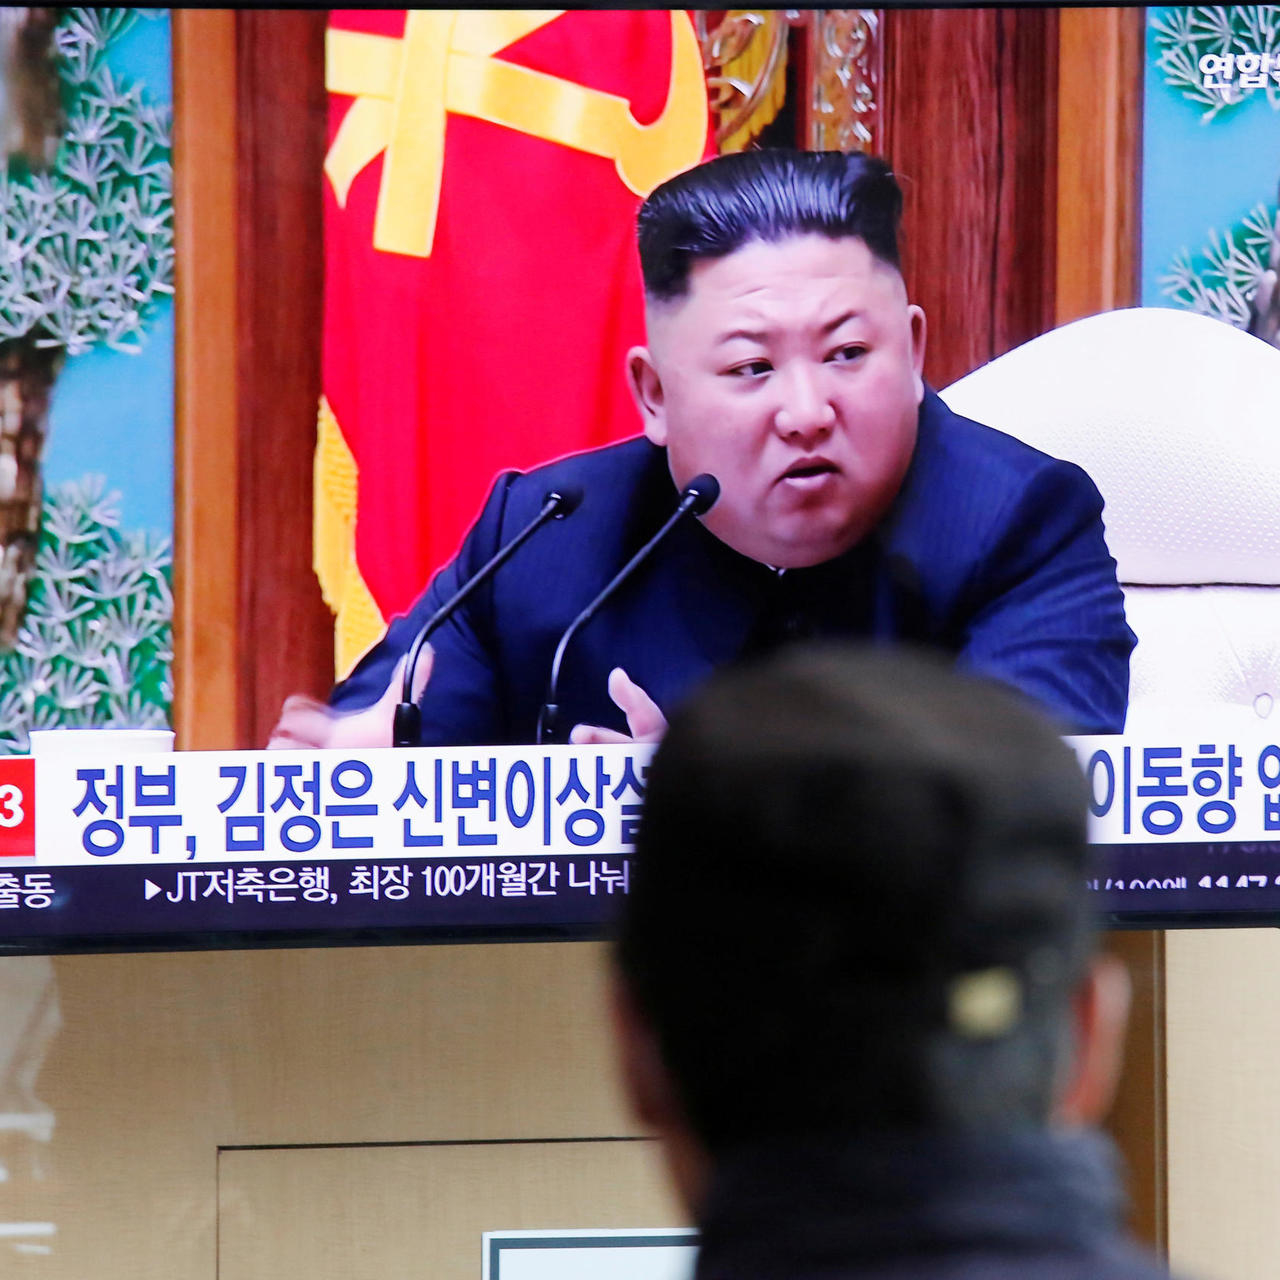 La Corée du Sud a détecté des mouvements inhabituels en Corée du Nord